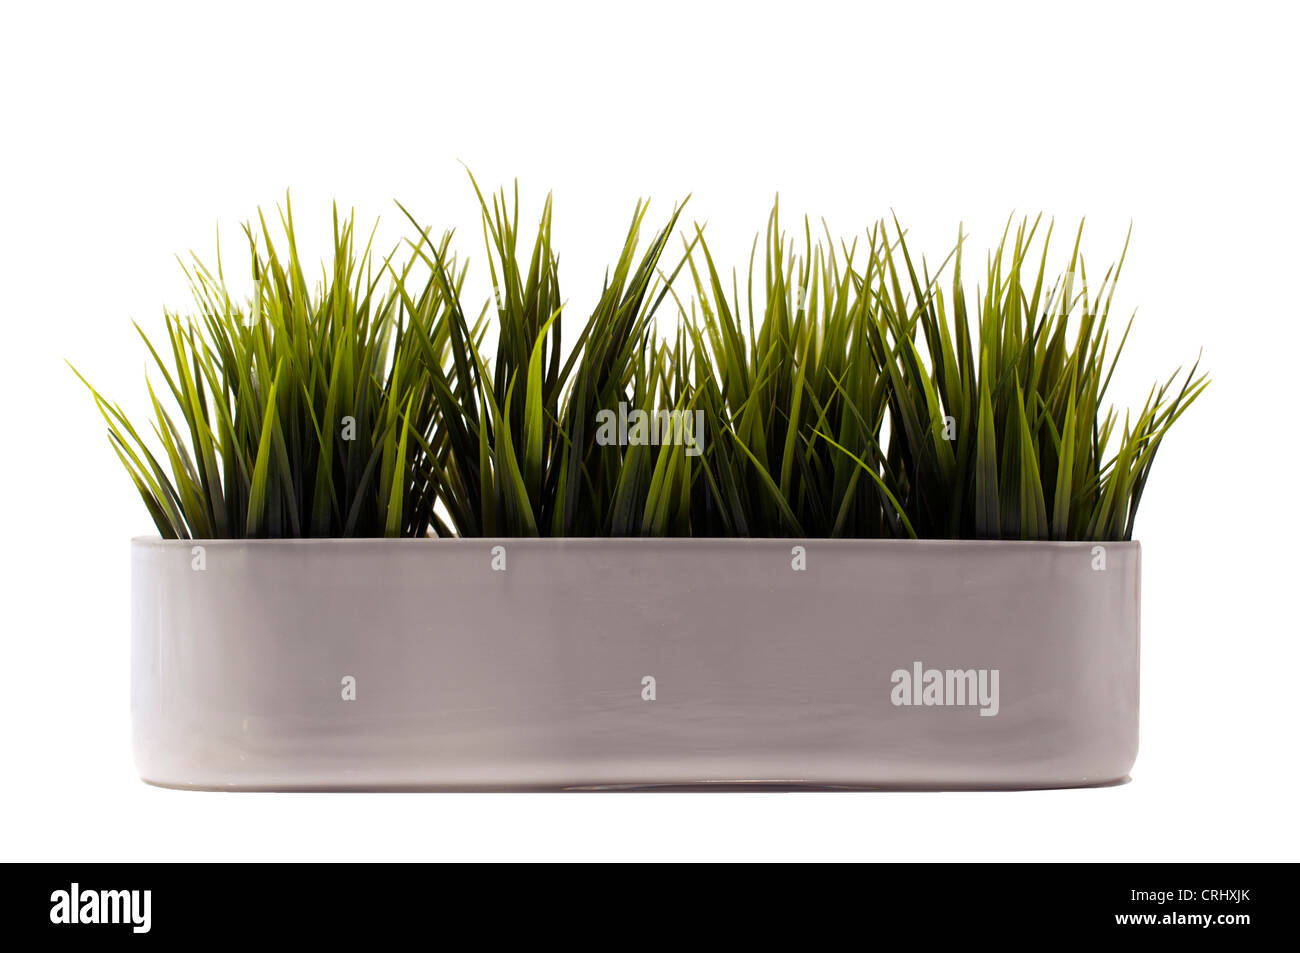 Plante verte herbe cultivée en pot Banque D'Images